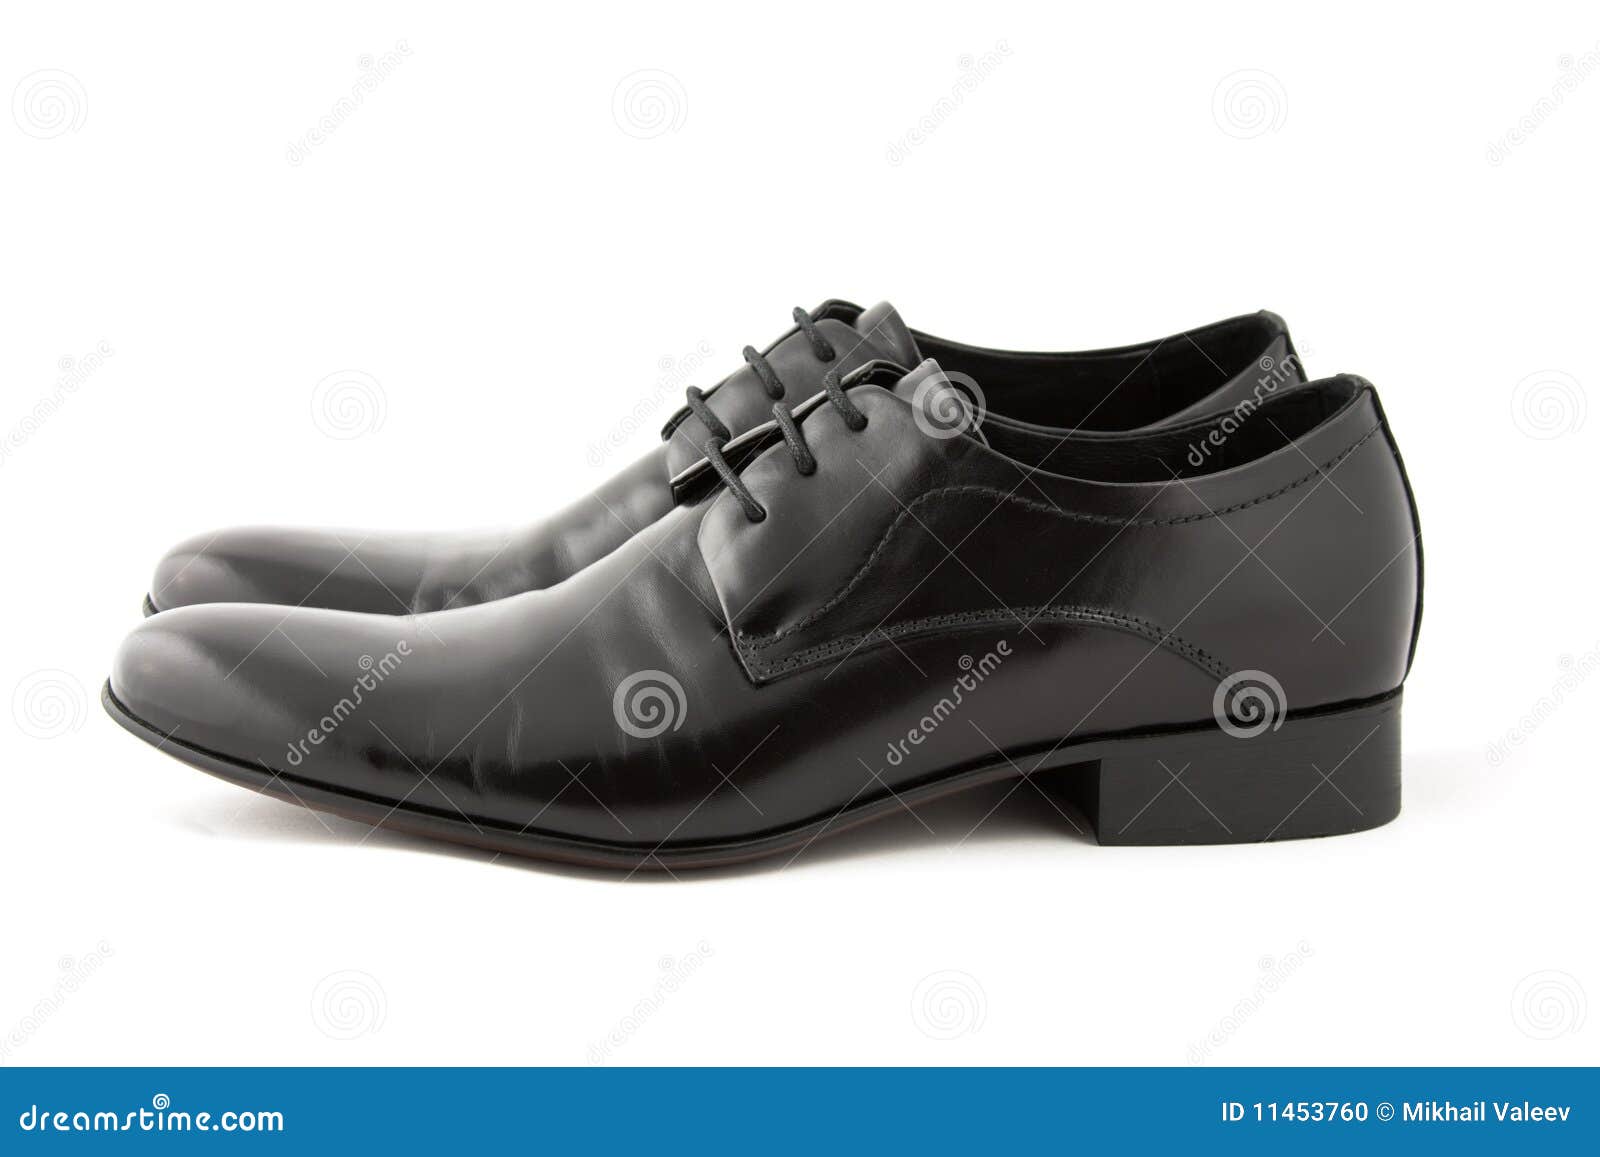 Black leather shoes stock photo. Image of shoes, wardrobe - 11453760